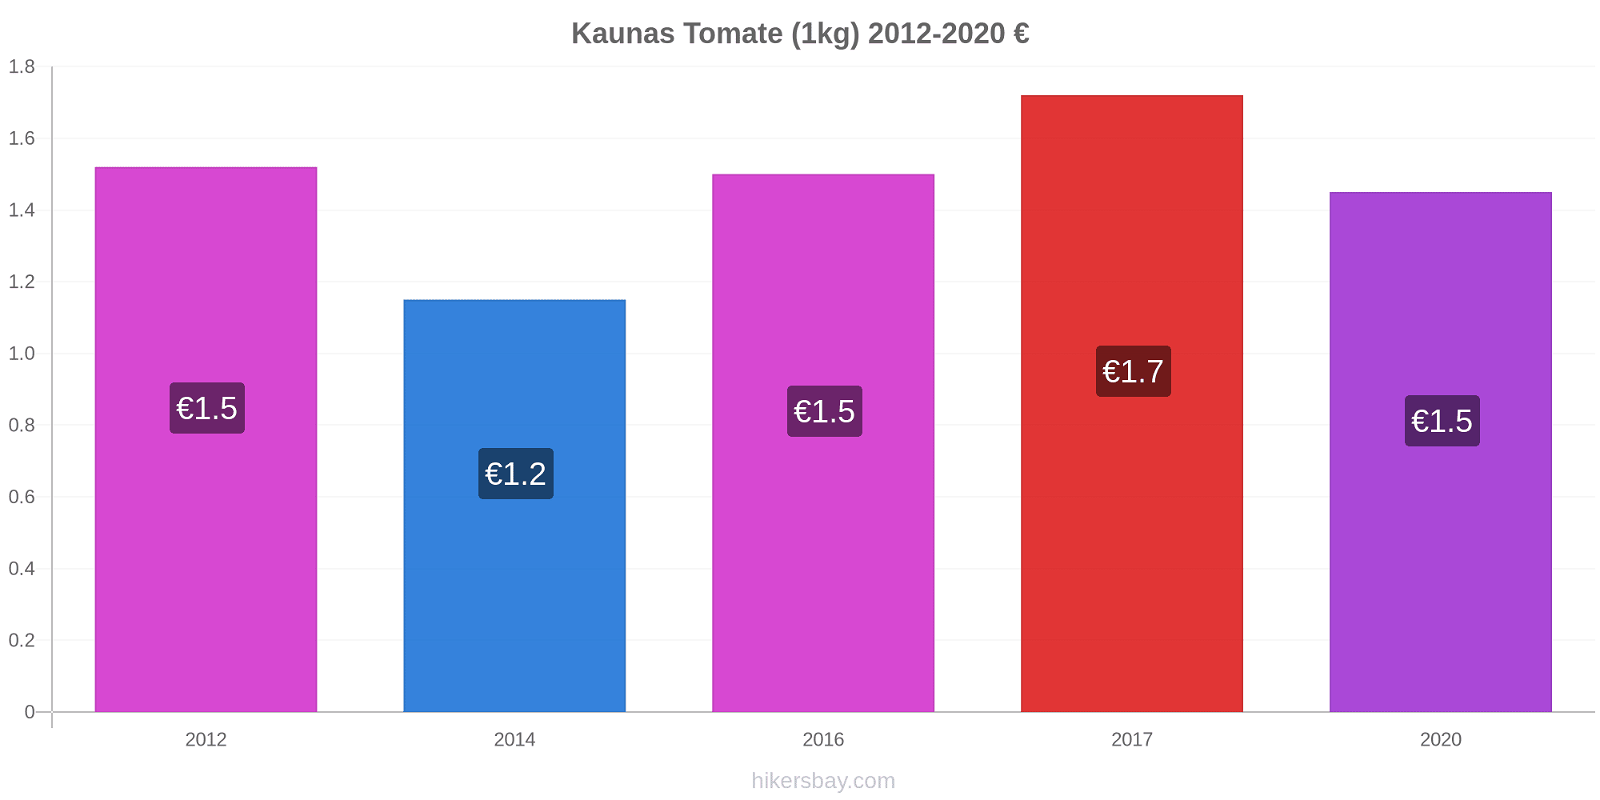 Kaunas Preisänderungen Tomaten (1kg) hikersbay.com